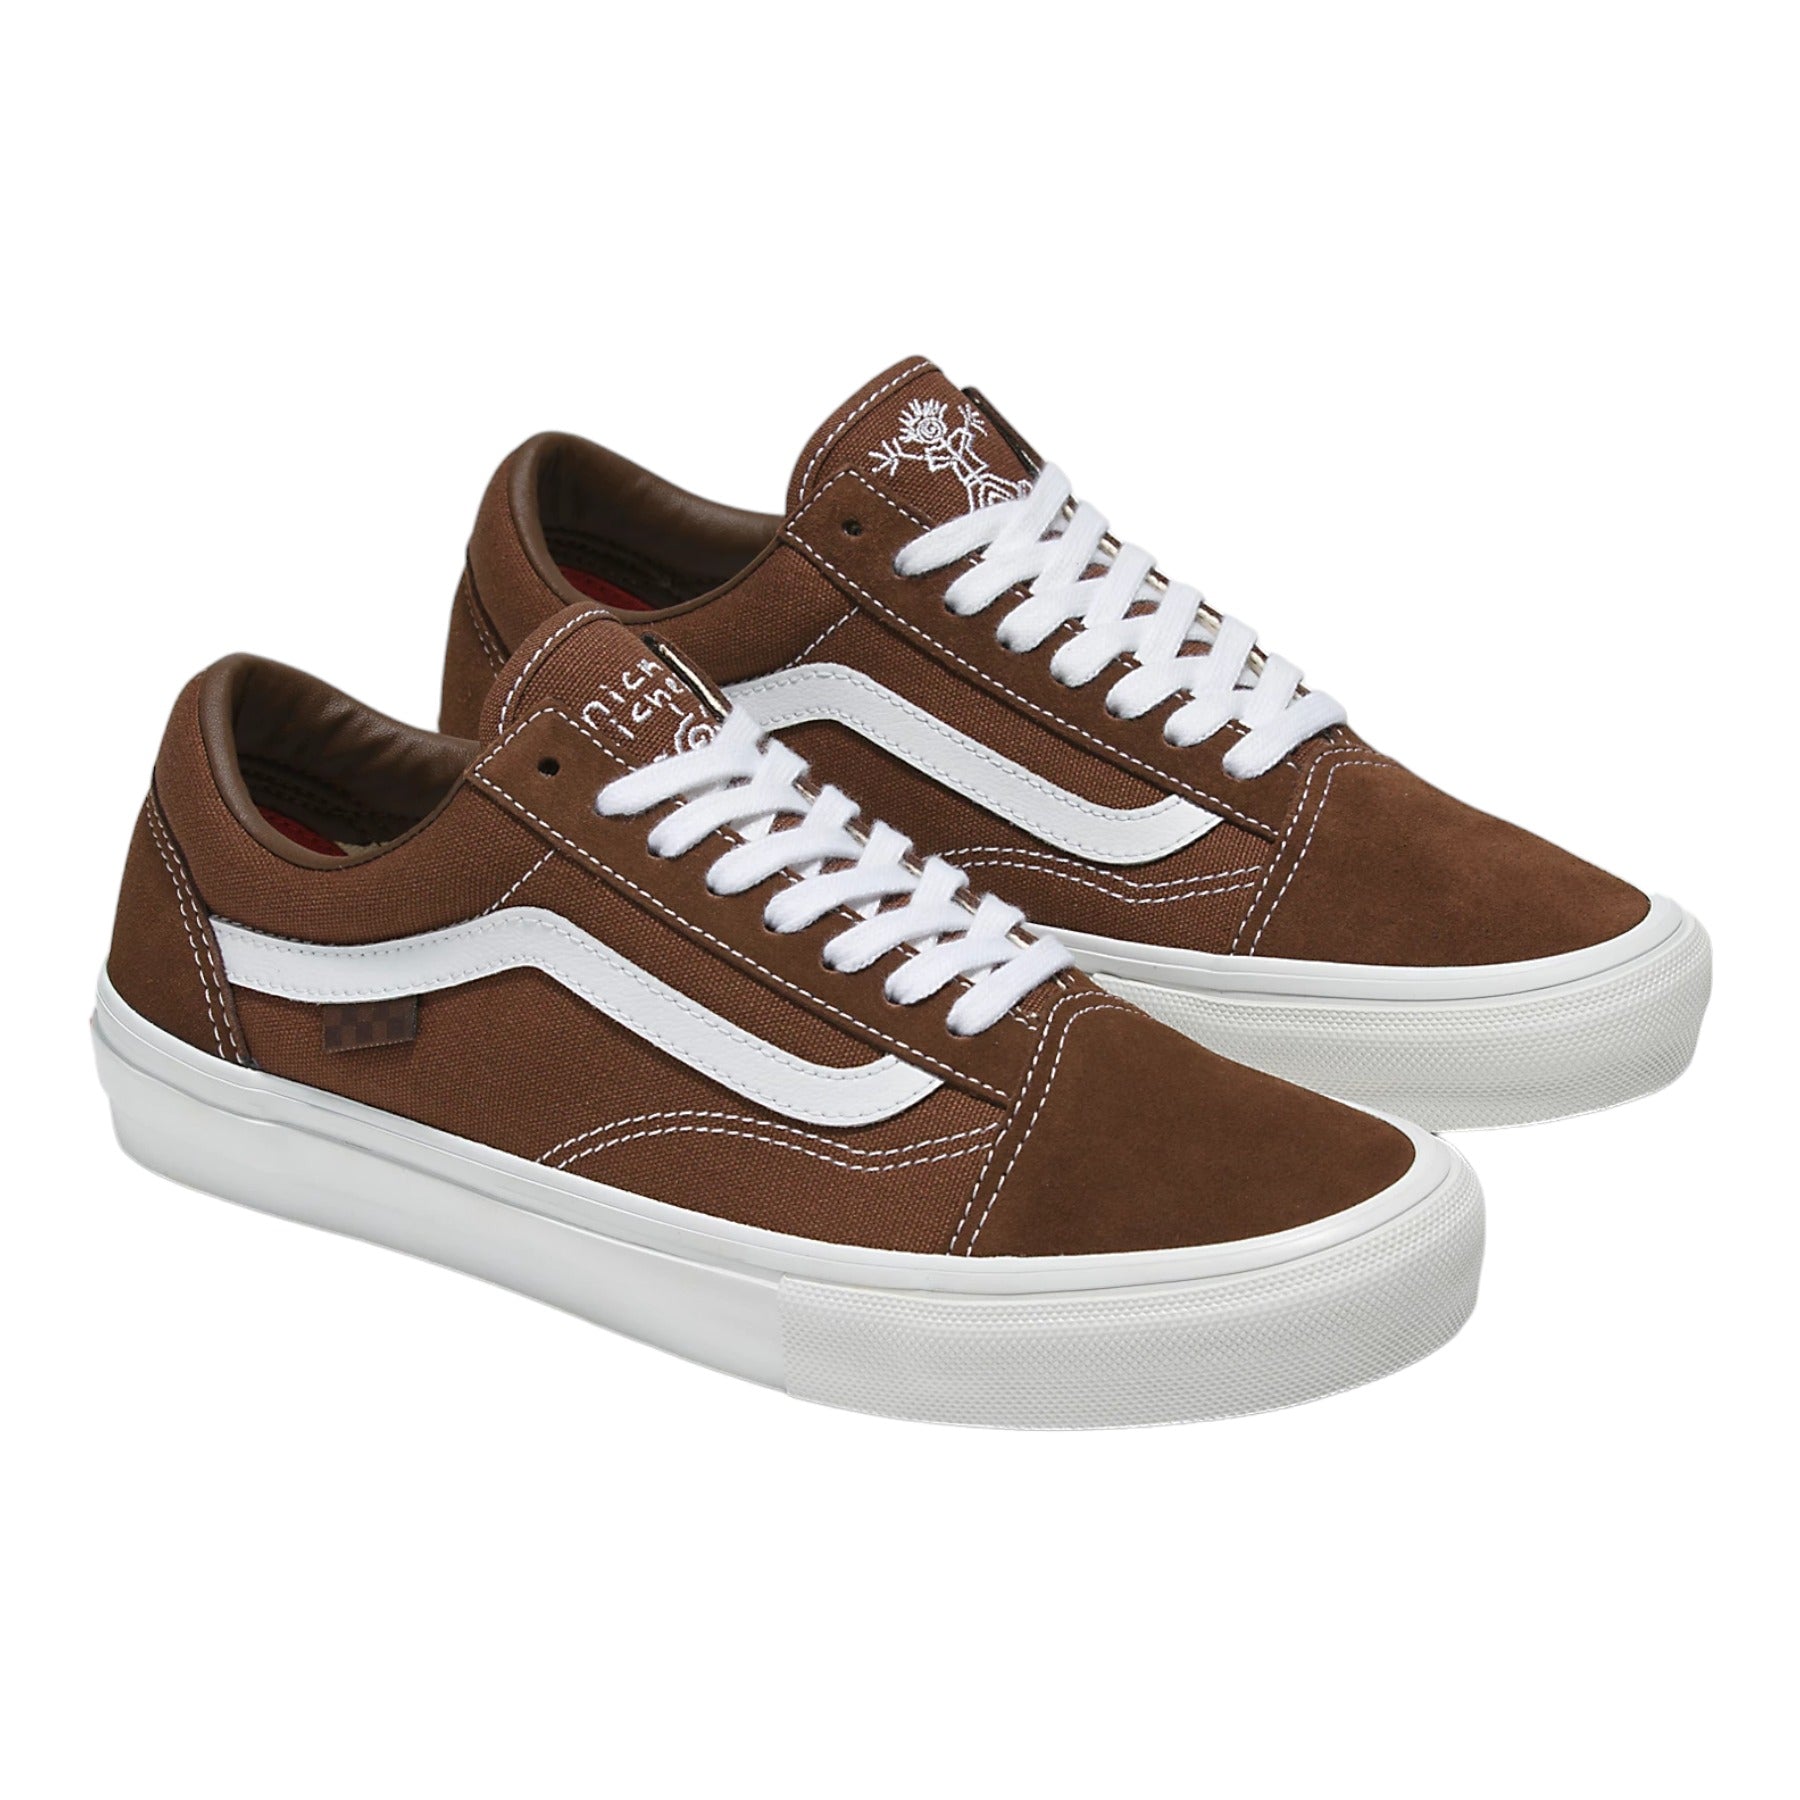 Vans Skate Old Skool Shoes (Nick Michel) - Brown/White